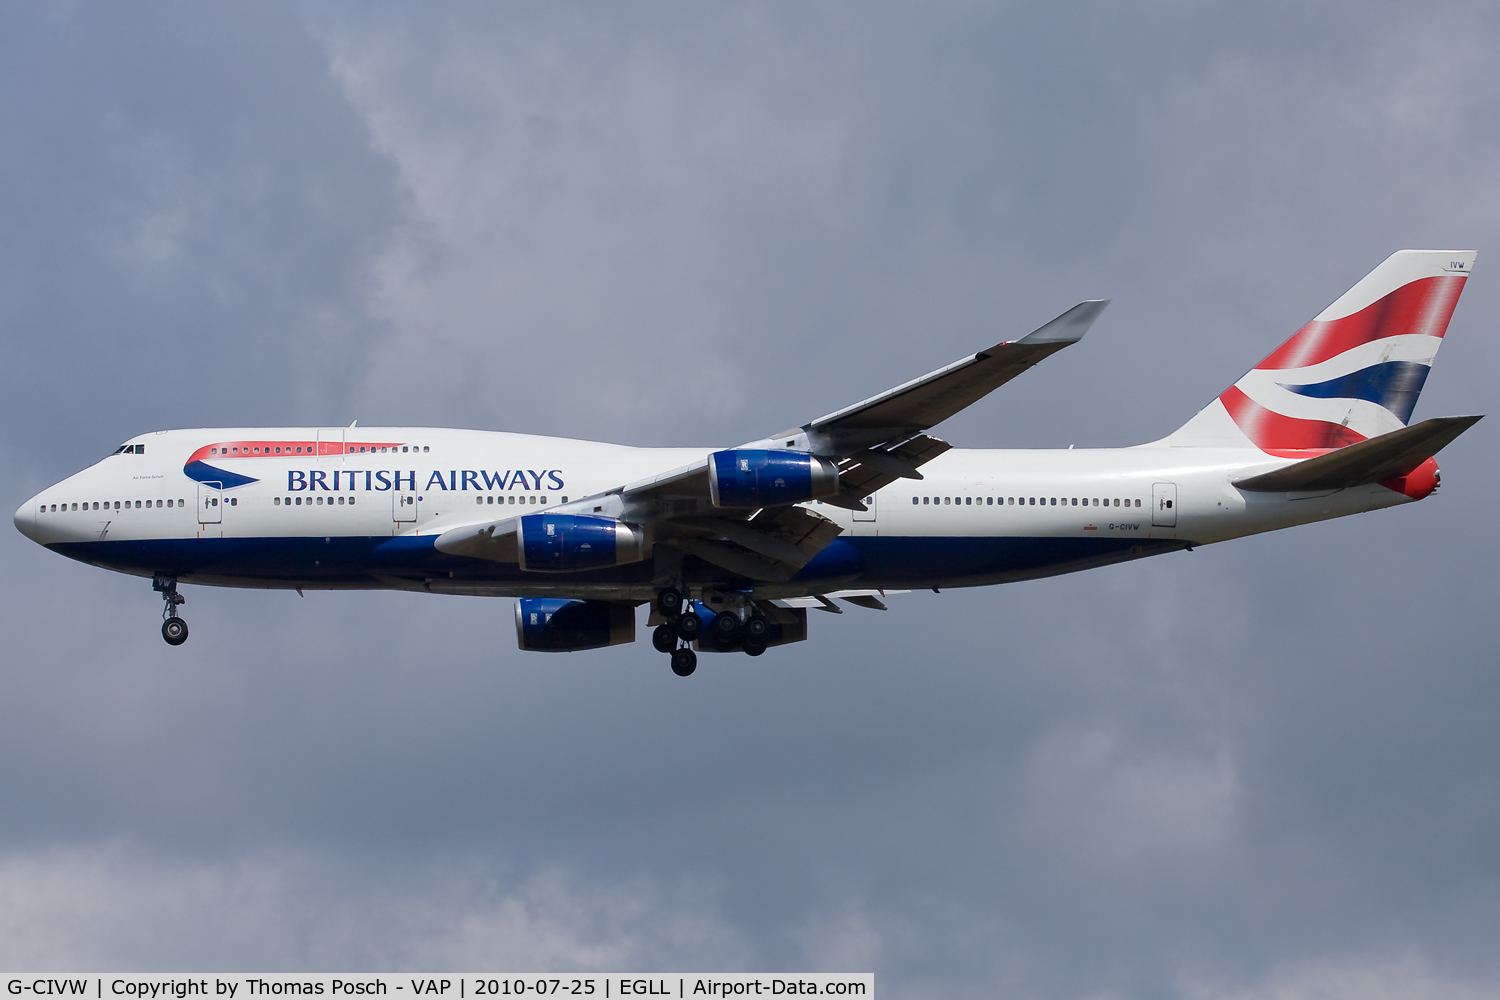 G-CIVW, 1998 Boeing 747-436 C/N 25822, British Airways